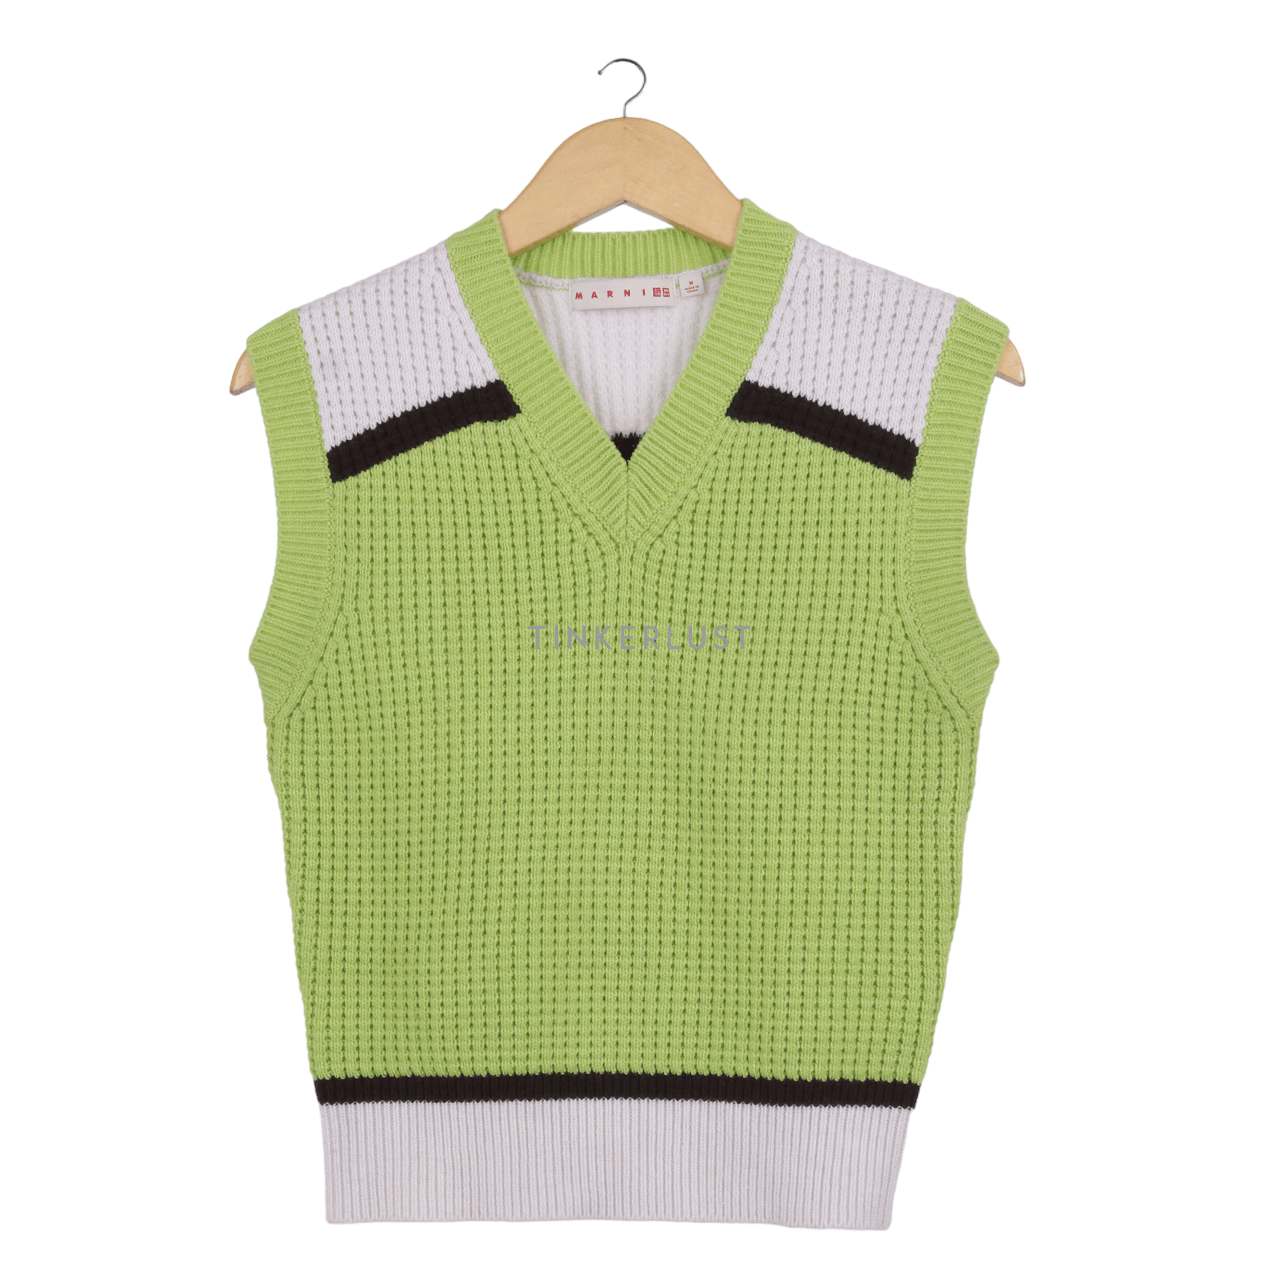 UNIQLO x MARNI Knitted V-Neck Green & White Vest